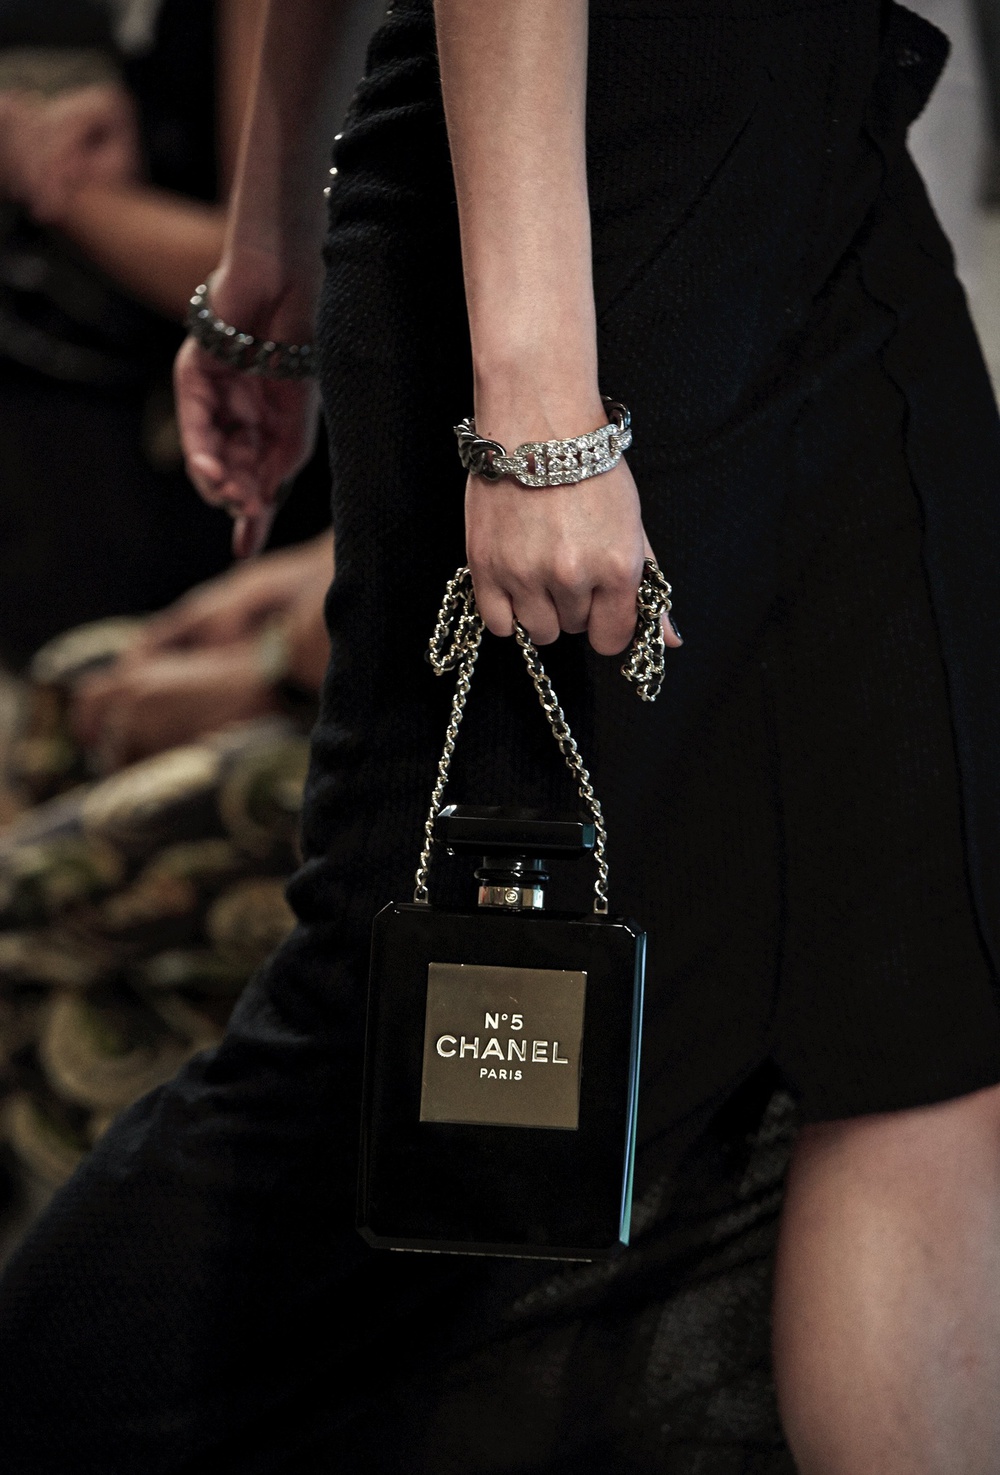 Bộ sưu tập Cruise 2014 giới thiệu mẫu túi xách mang hình chai nước hoa Chanel No. 5 - một trong những biểu tượng nổi tiếng nhất của nhà mốt này.